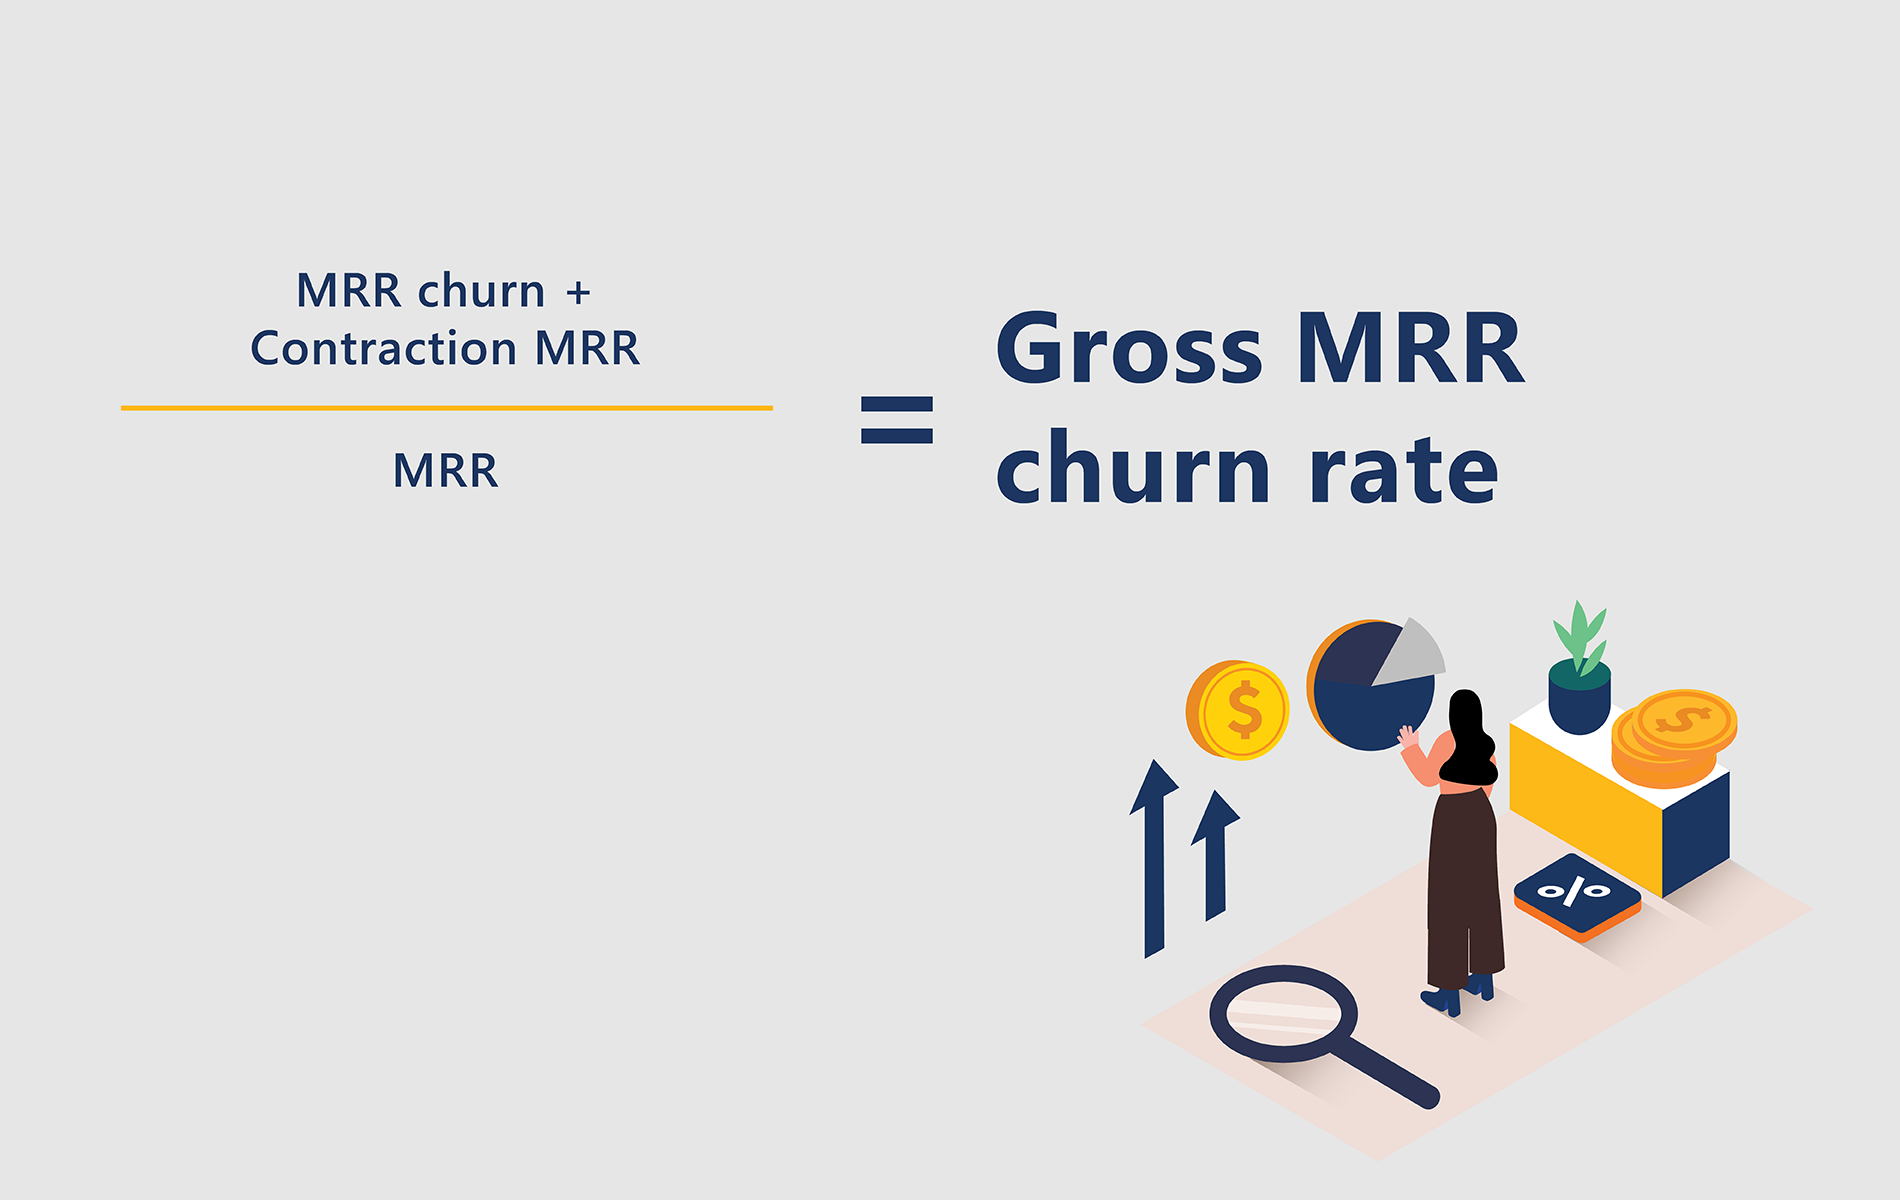 Subscriber churn metrics – gross MRR churn rate